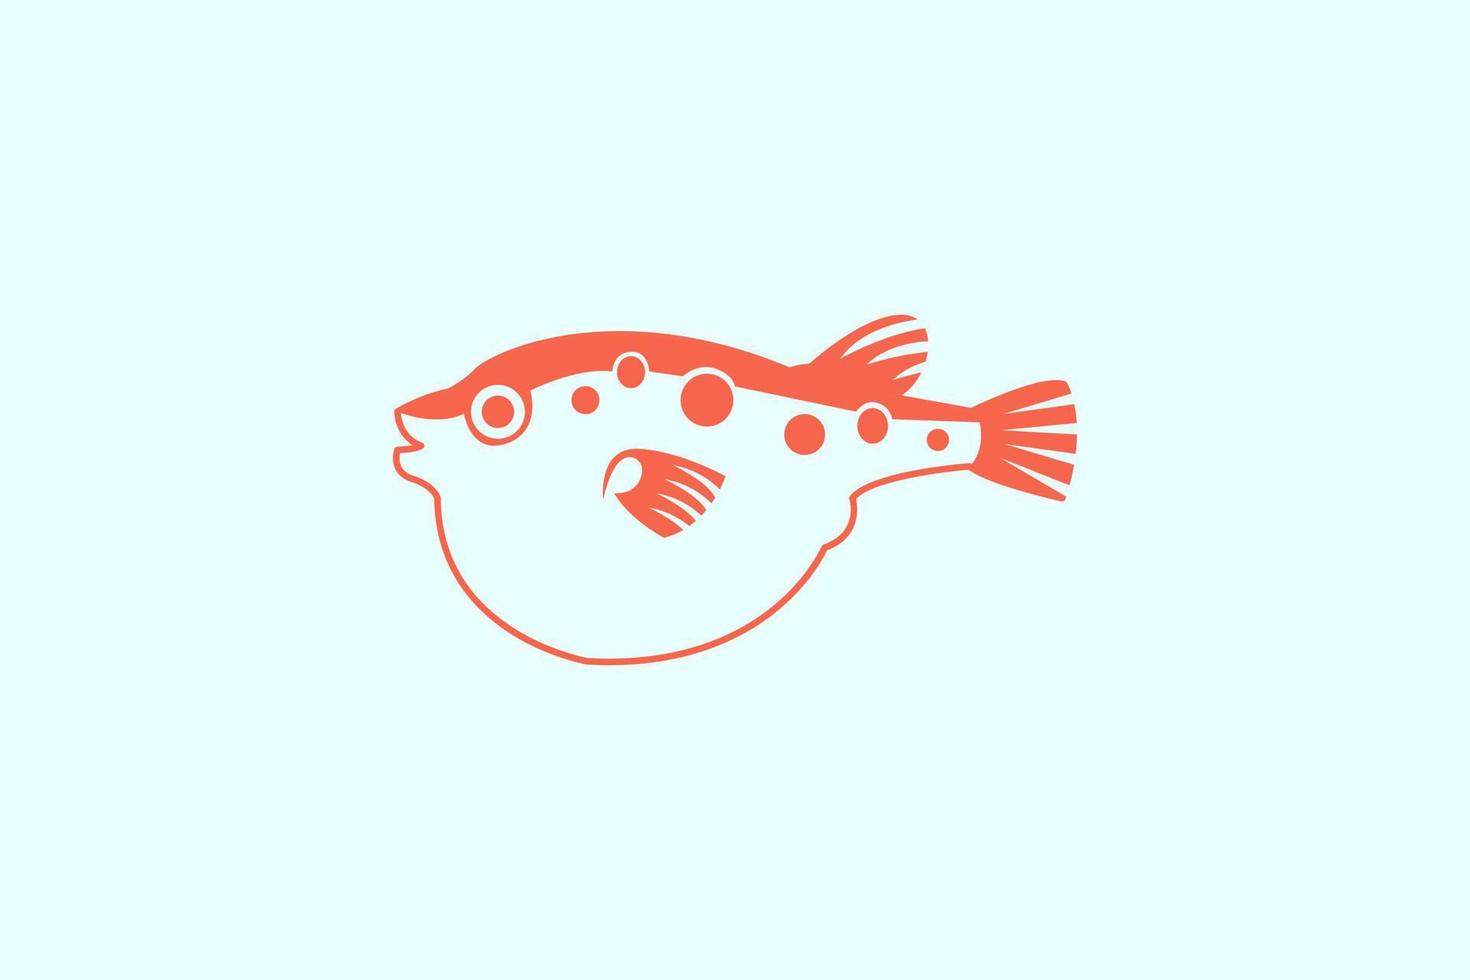 poisson-globe logo nourriture japonaise. modèle de logo de sushi fugu. concept de mascotte de logo de poisson-globe pour l'icône de fruits de mer frais vecteur